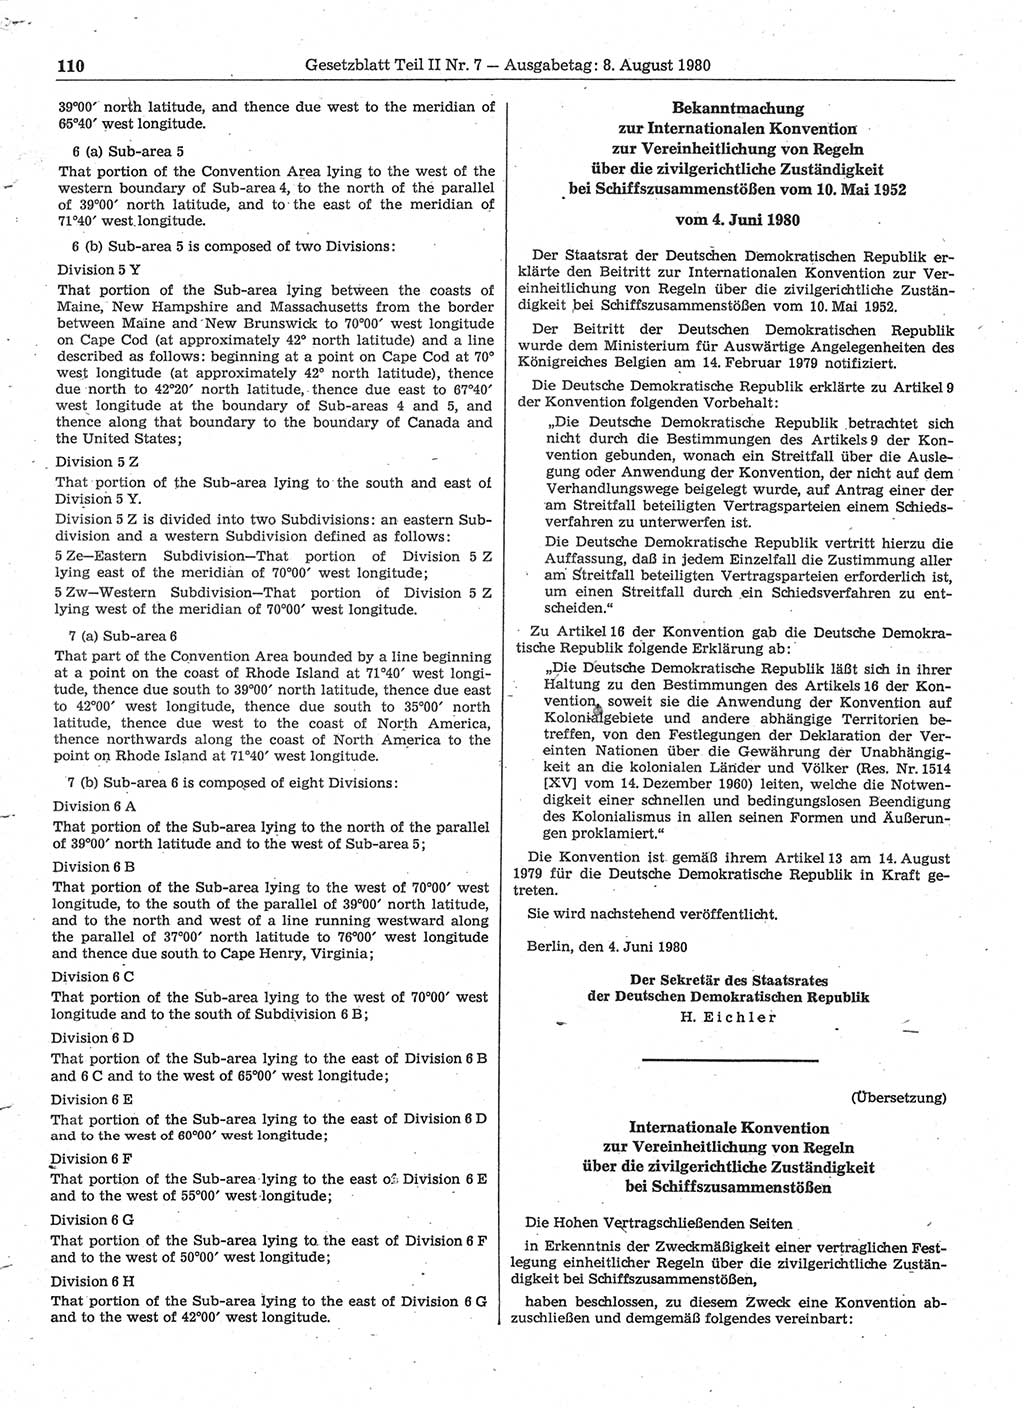 Gesetzblatt (GBl.) der Deutschen Demokratischen Republik (DDR) Teil ⅠⅠ 1980, Seite 110 (GBl. DDR ⅠⅠ 1980, S. 110)